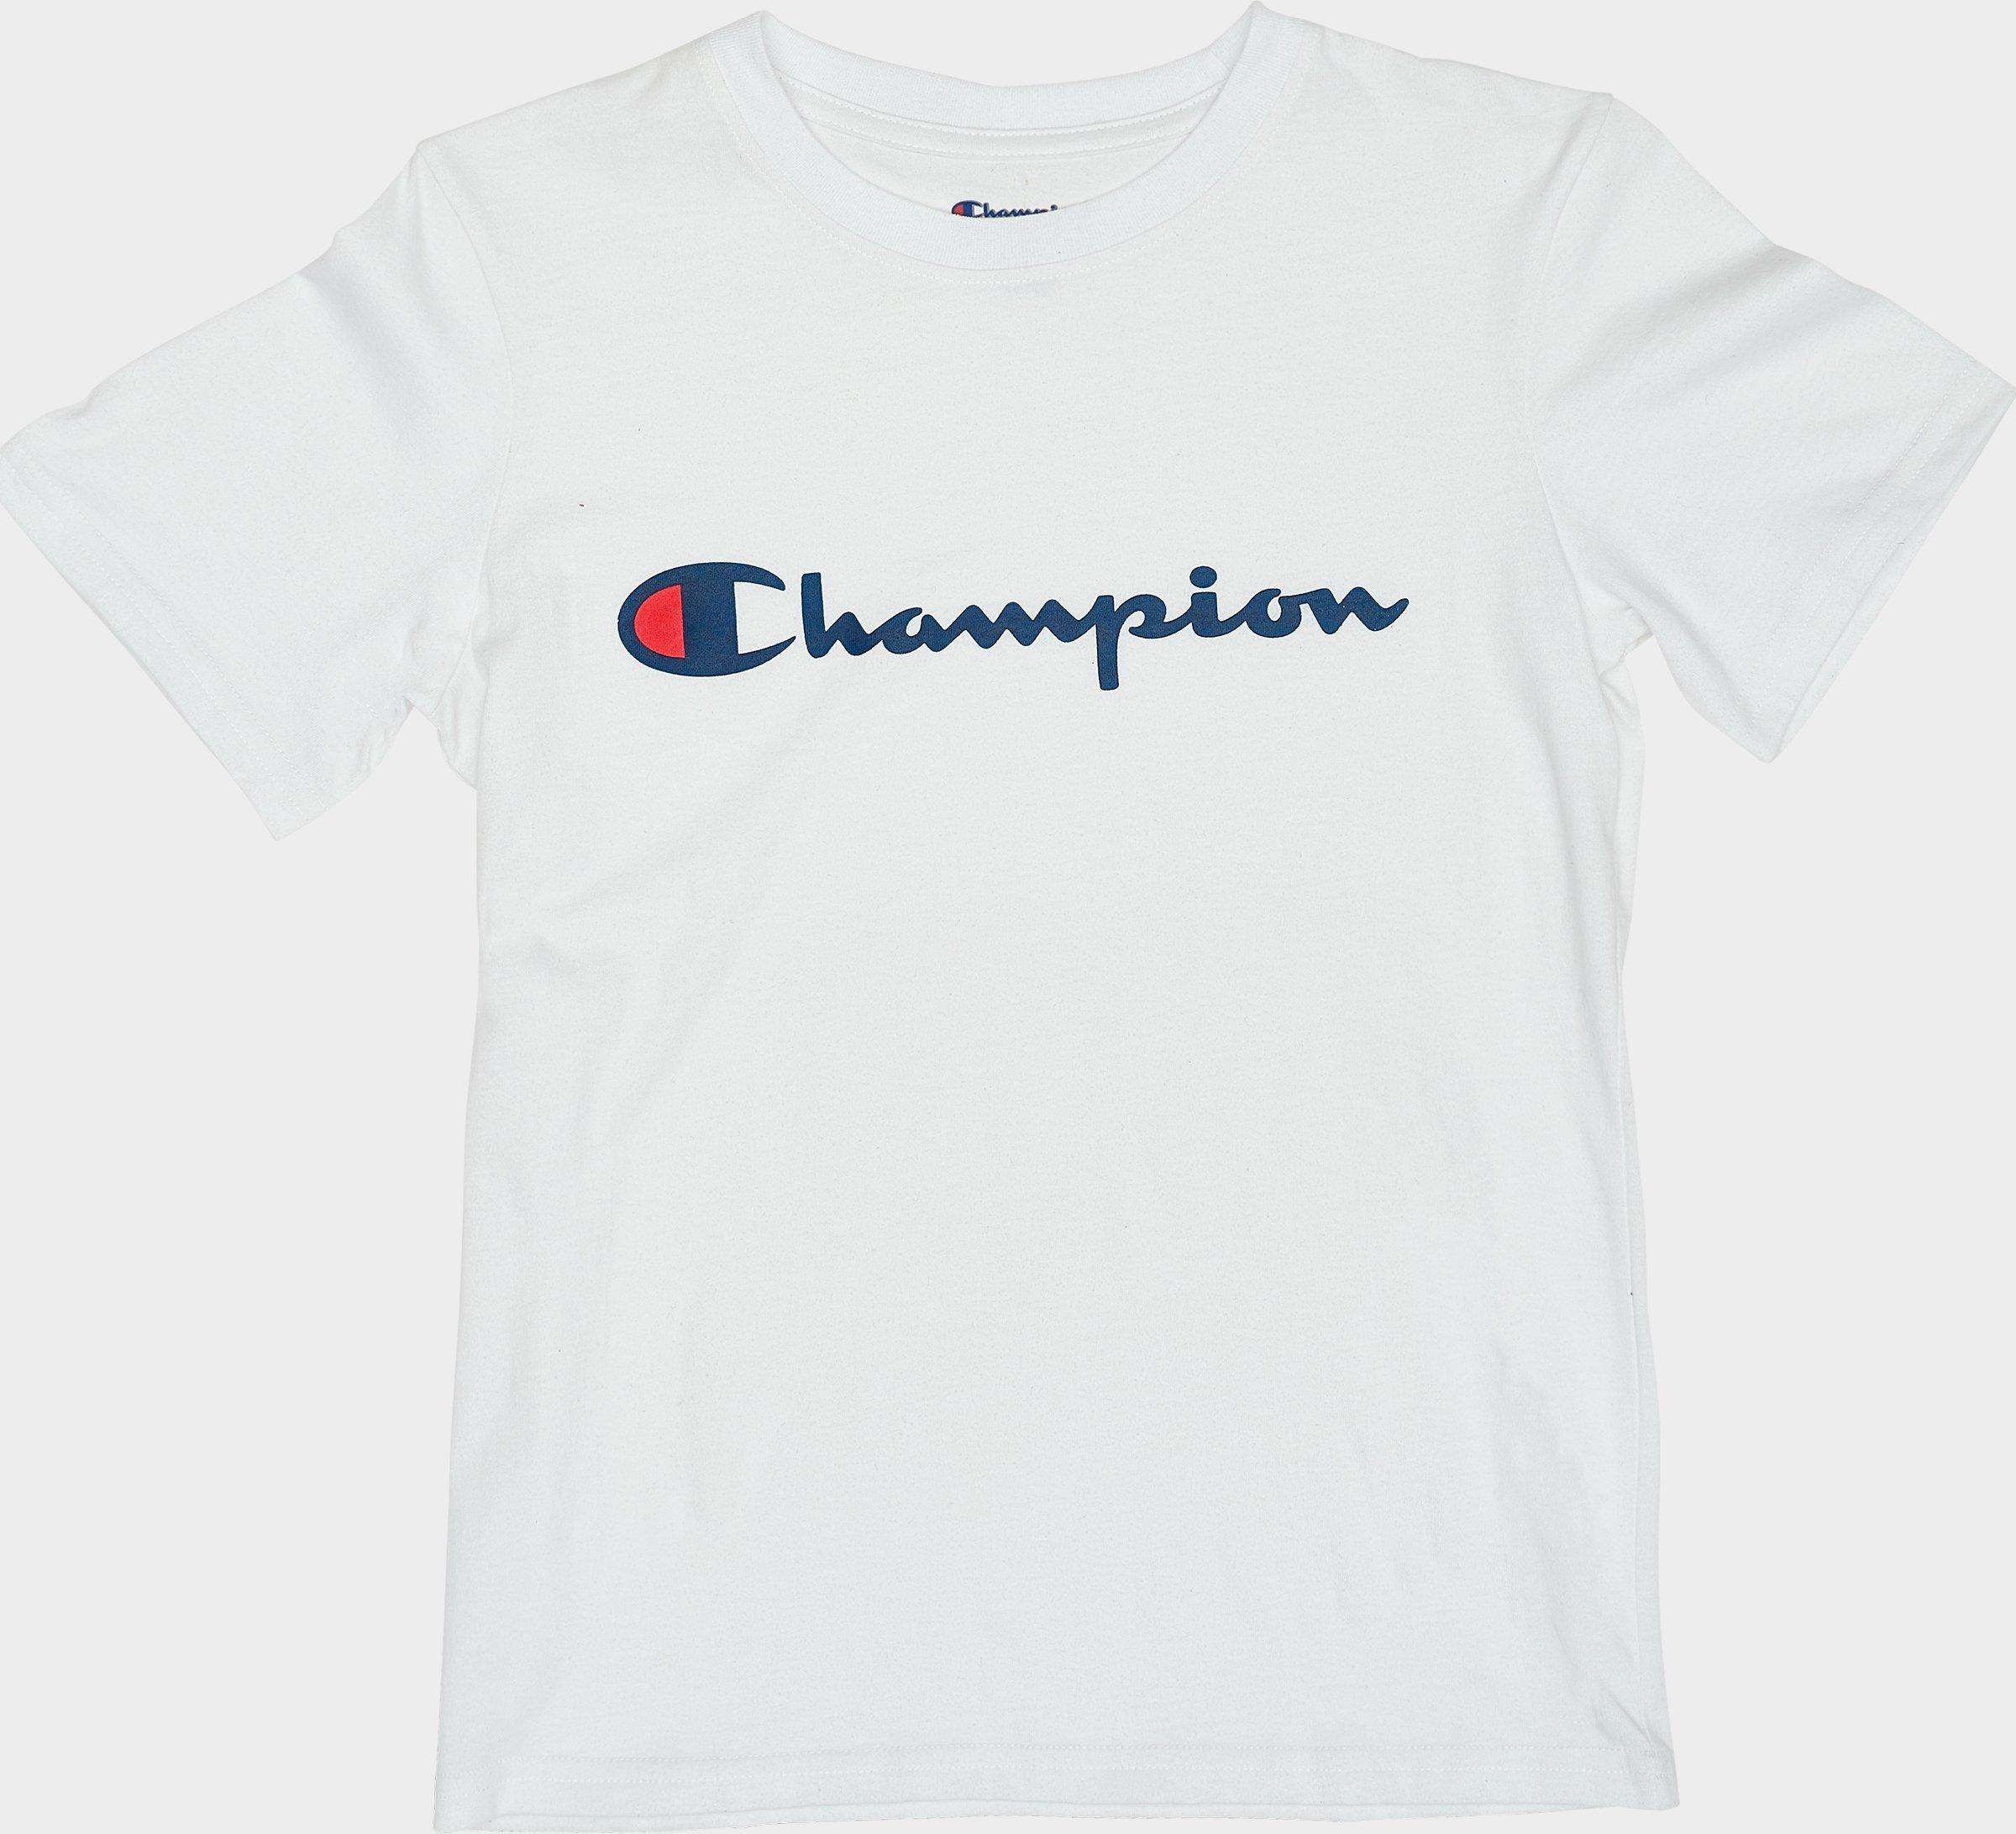 4x champion shirts